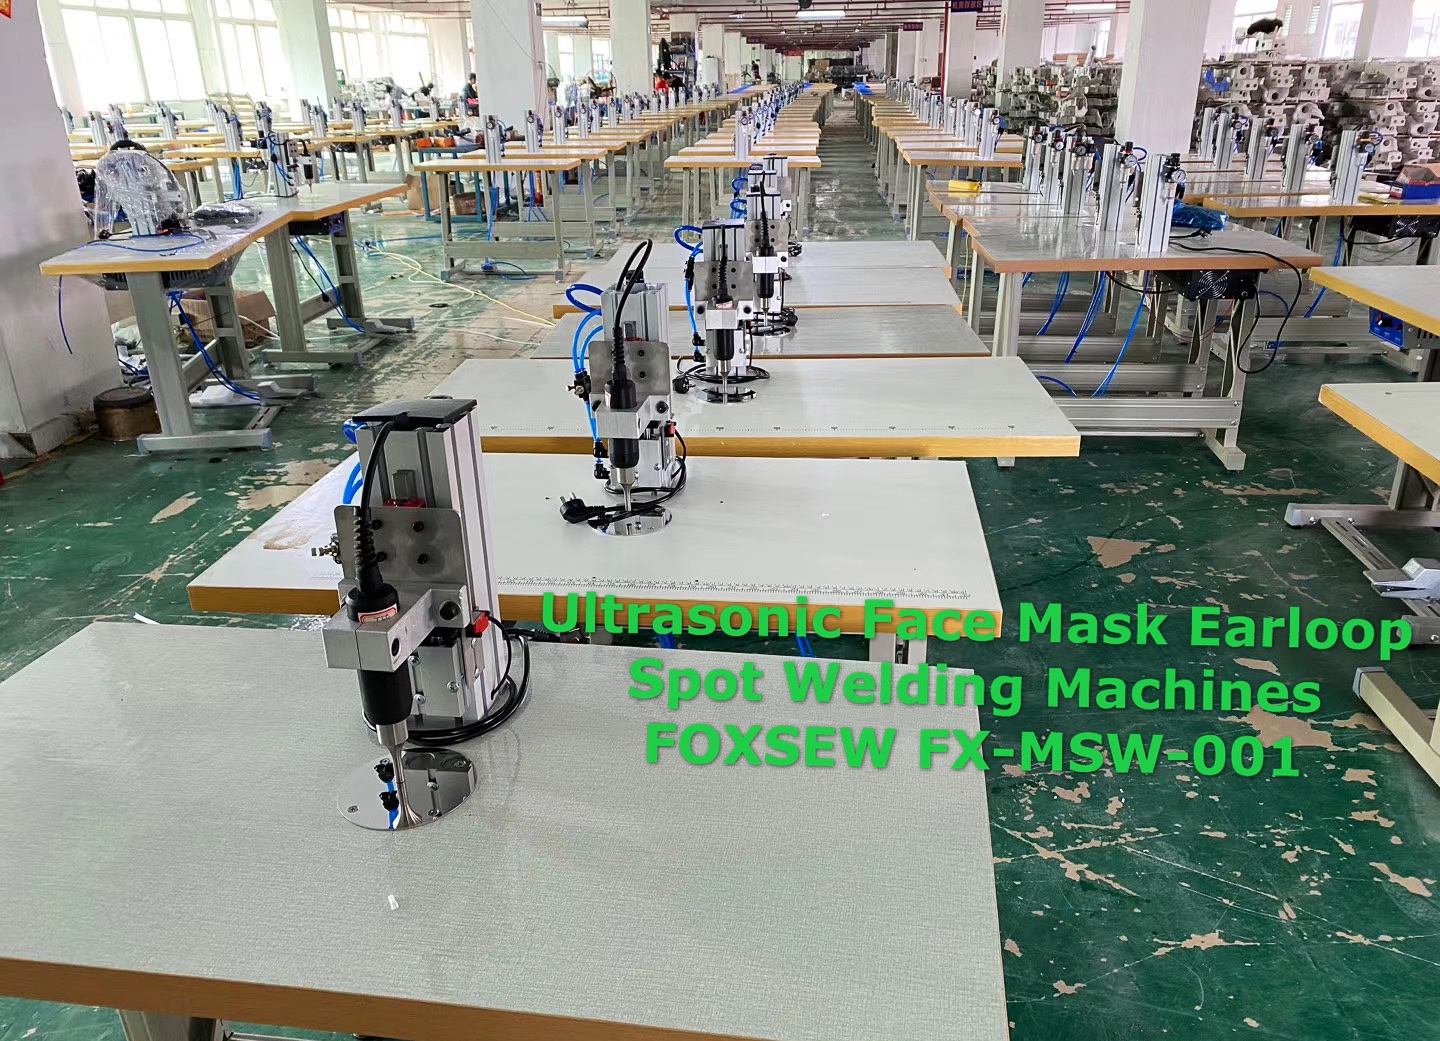 Ultrasonic Face Mask Earloop Spot Welding Machines FOXSEW FX-MSW-003 -1 (1)